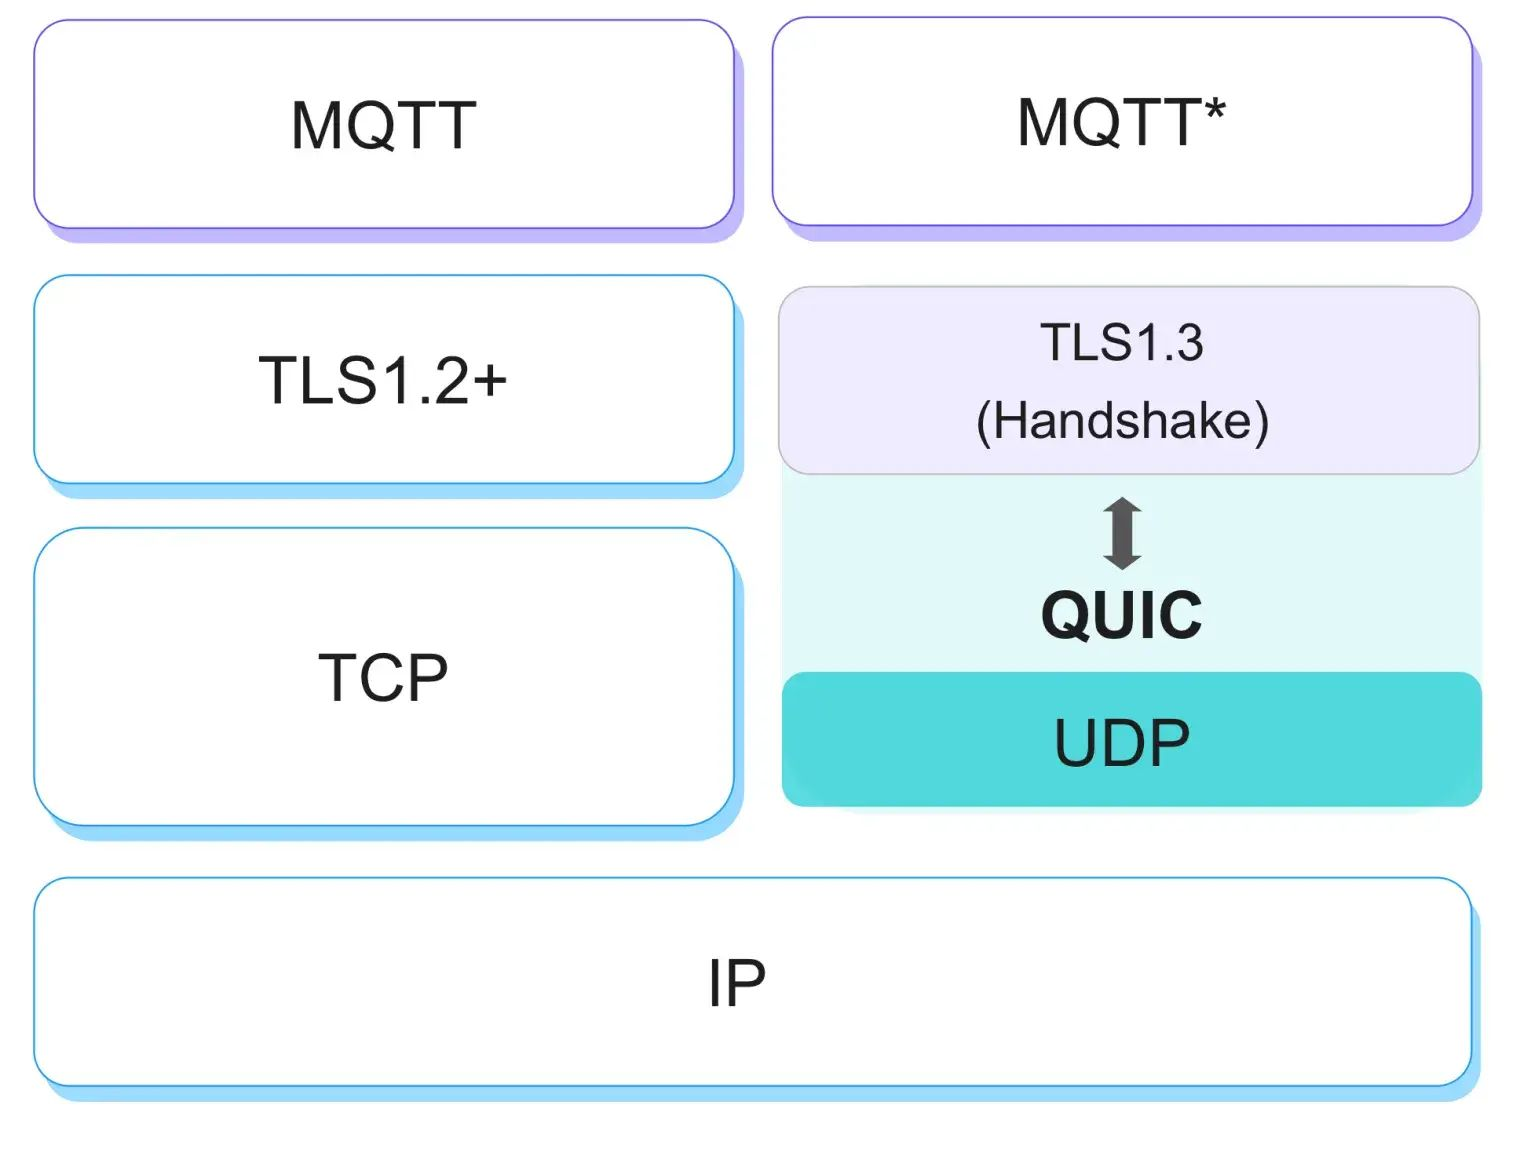 MQTT Over QUIC vs. MQTT Over TCP/TLS 